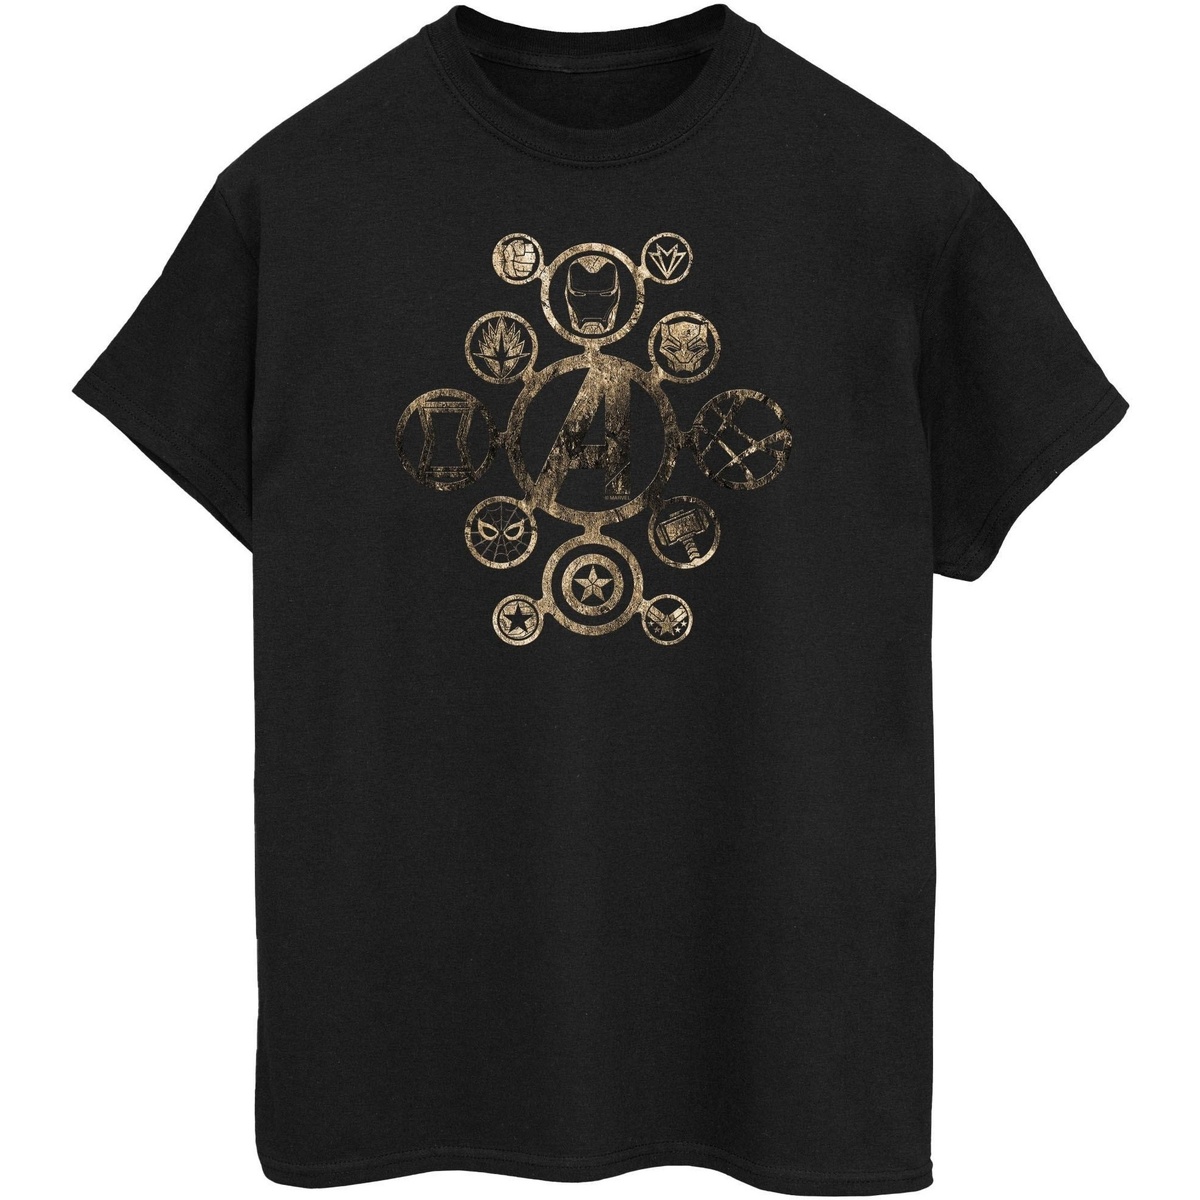 Vêtements Homme T-shirts manches longues Avengers Infinity War BI449 Noir